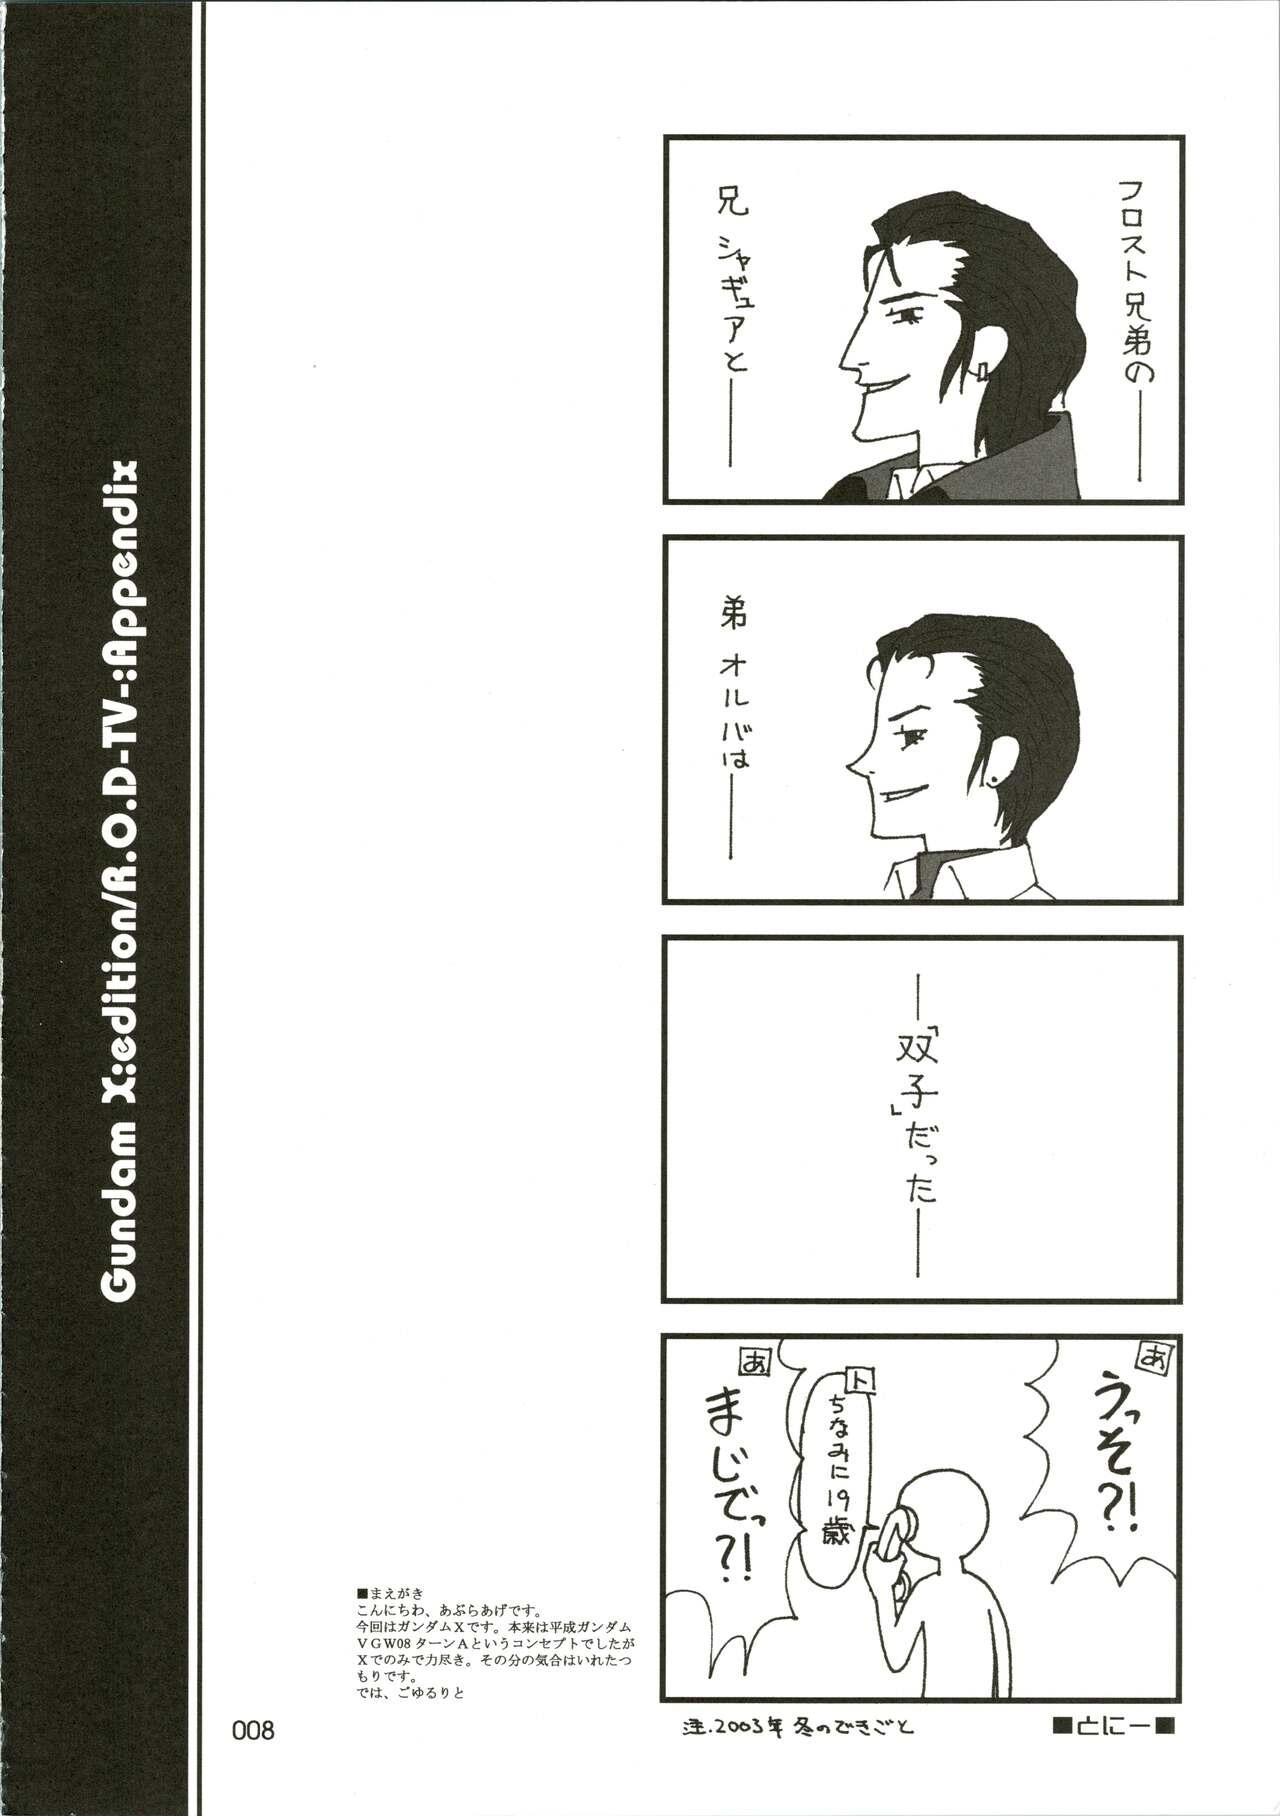 Boss [WINDFALL (Aburaage)] 303e Vol. 07 (Gundam X, R.O.D the TV) ZHOA8229 - Read or die Gundam x Rough Porn - Page 8